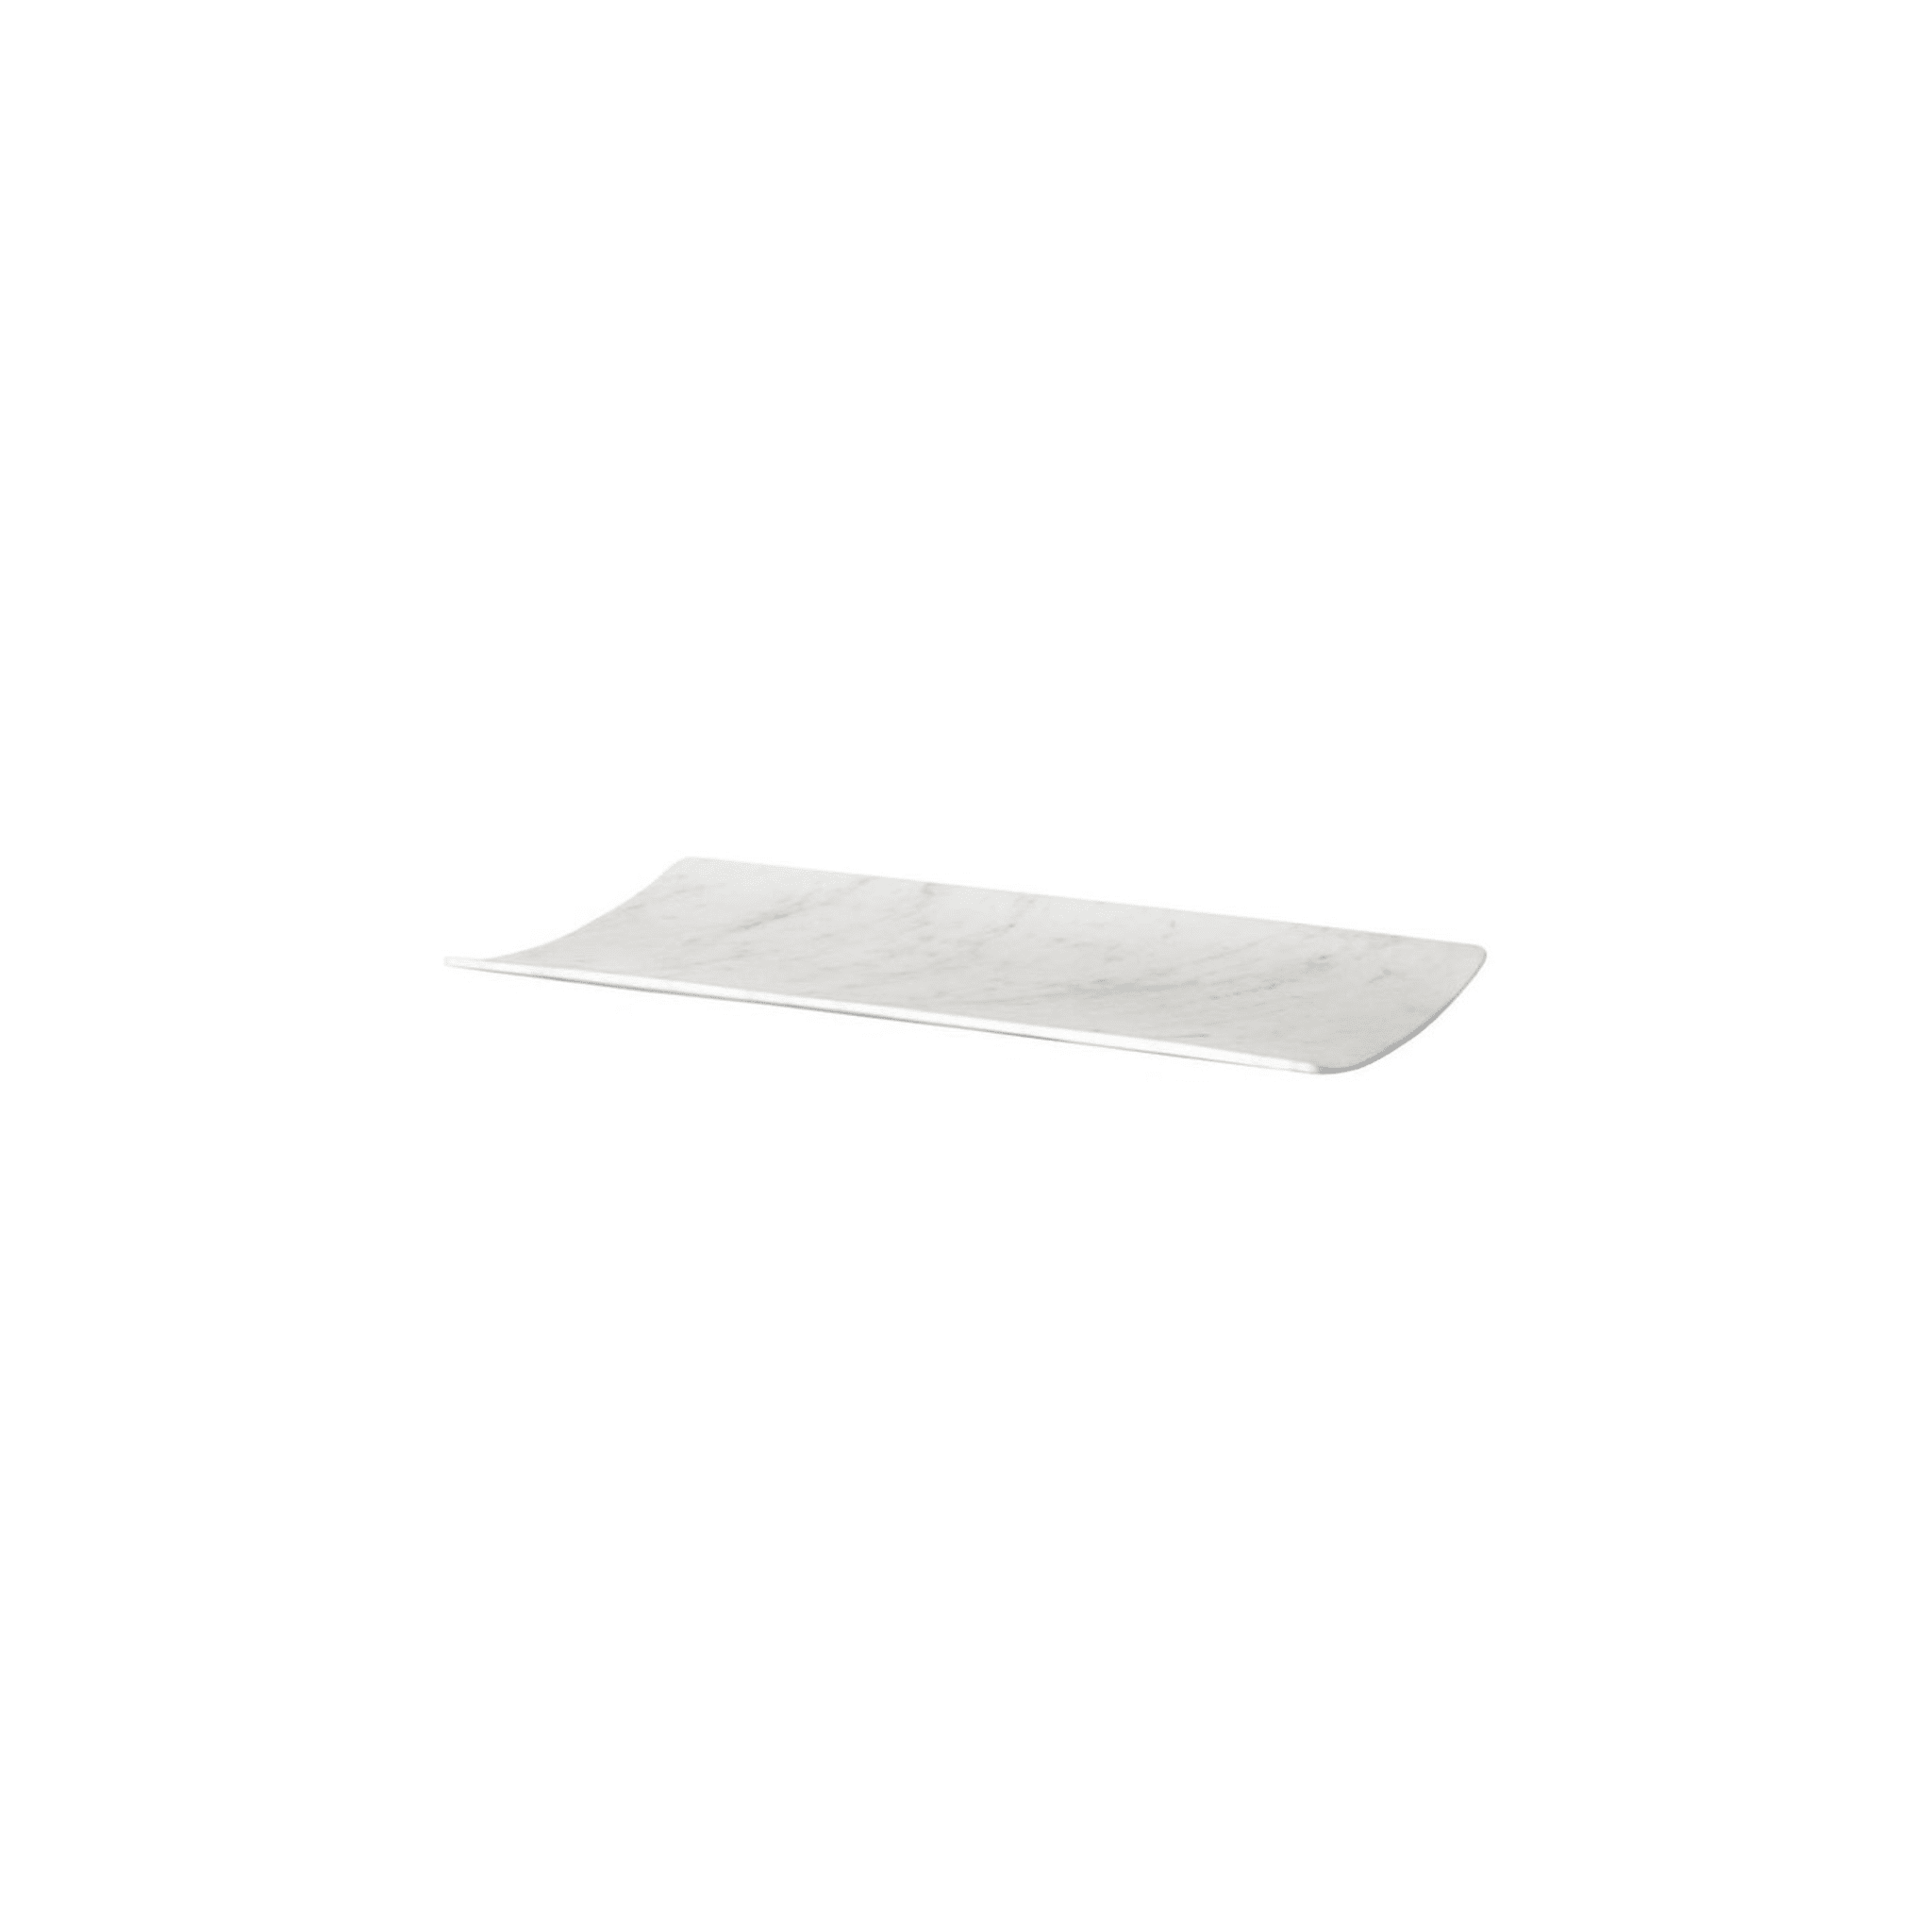 Curvati großes Tablett aus weißem Carrara von Studioformart - Alternative Ansicht 1